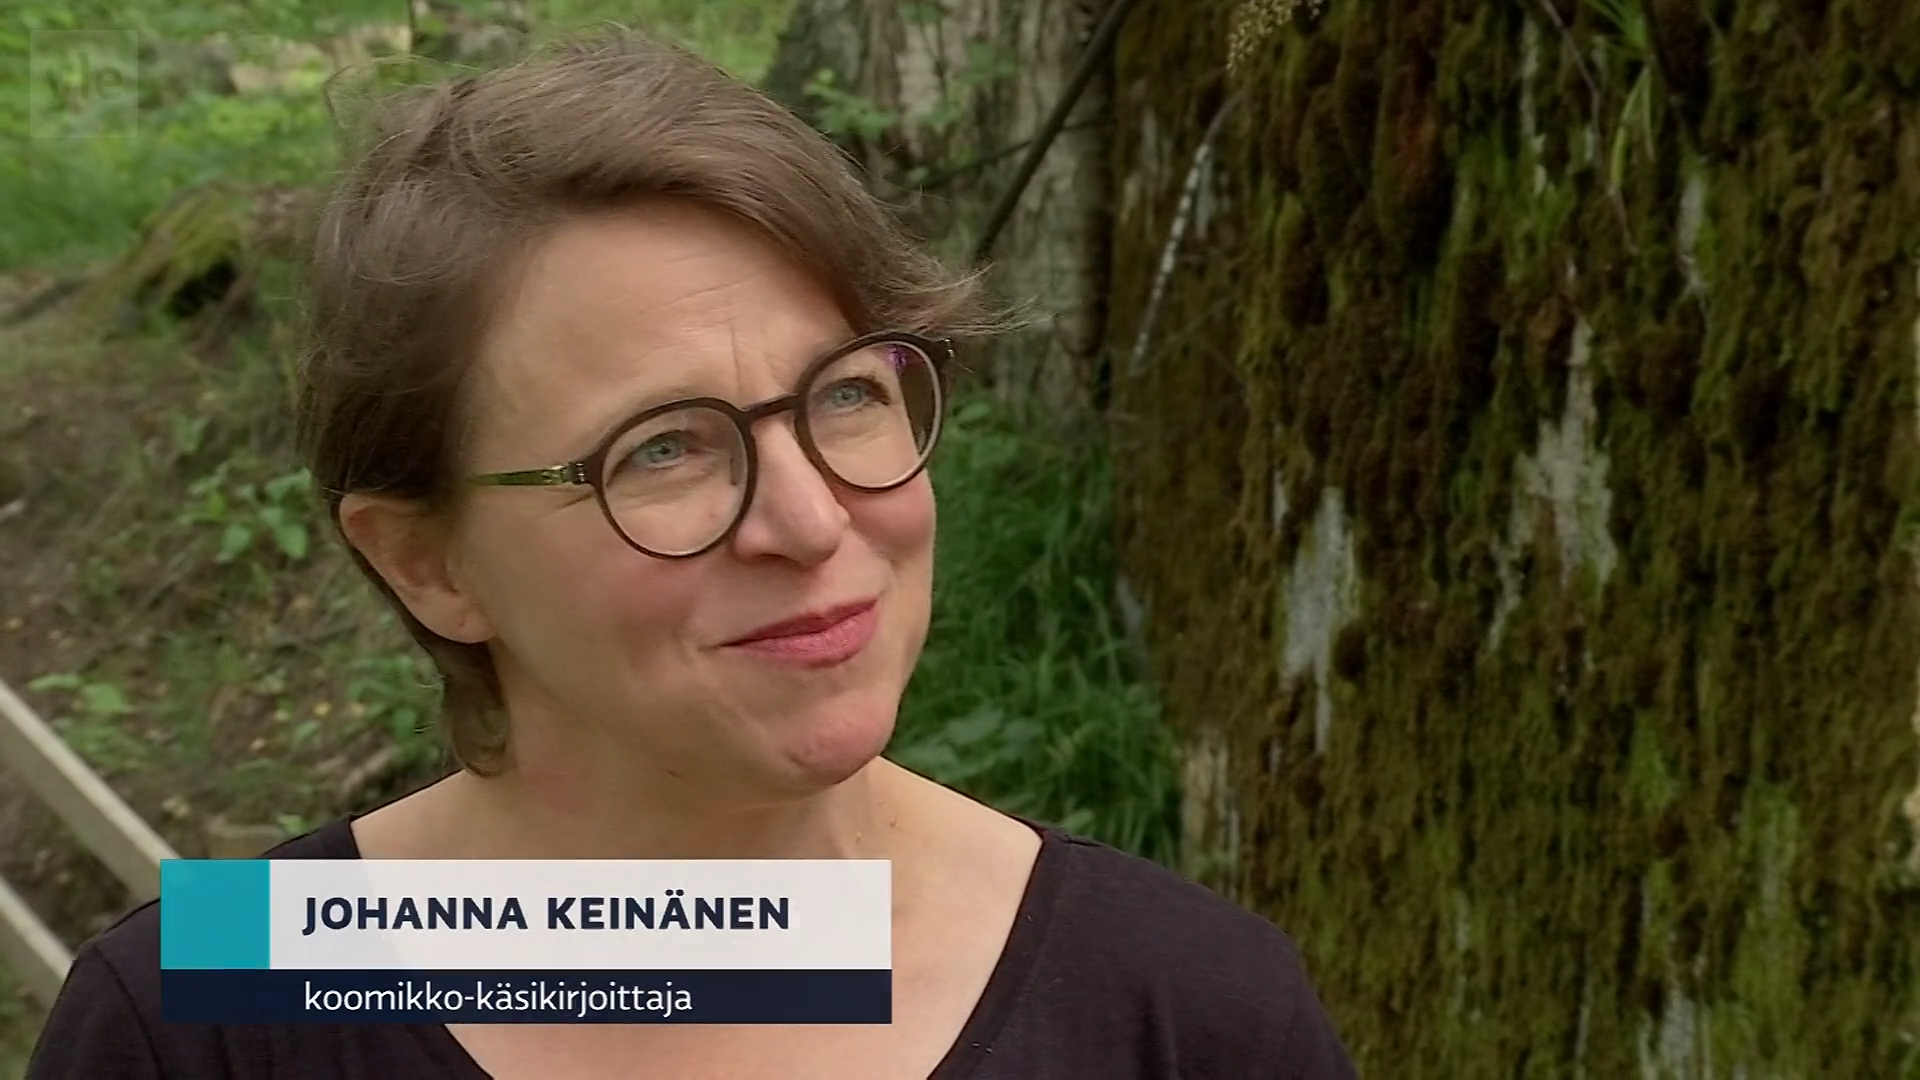 Interview with Johanna Keinänen